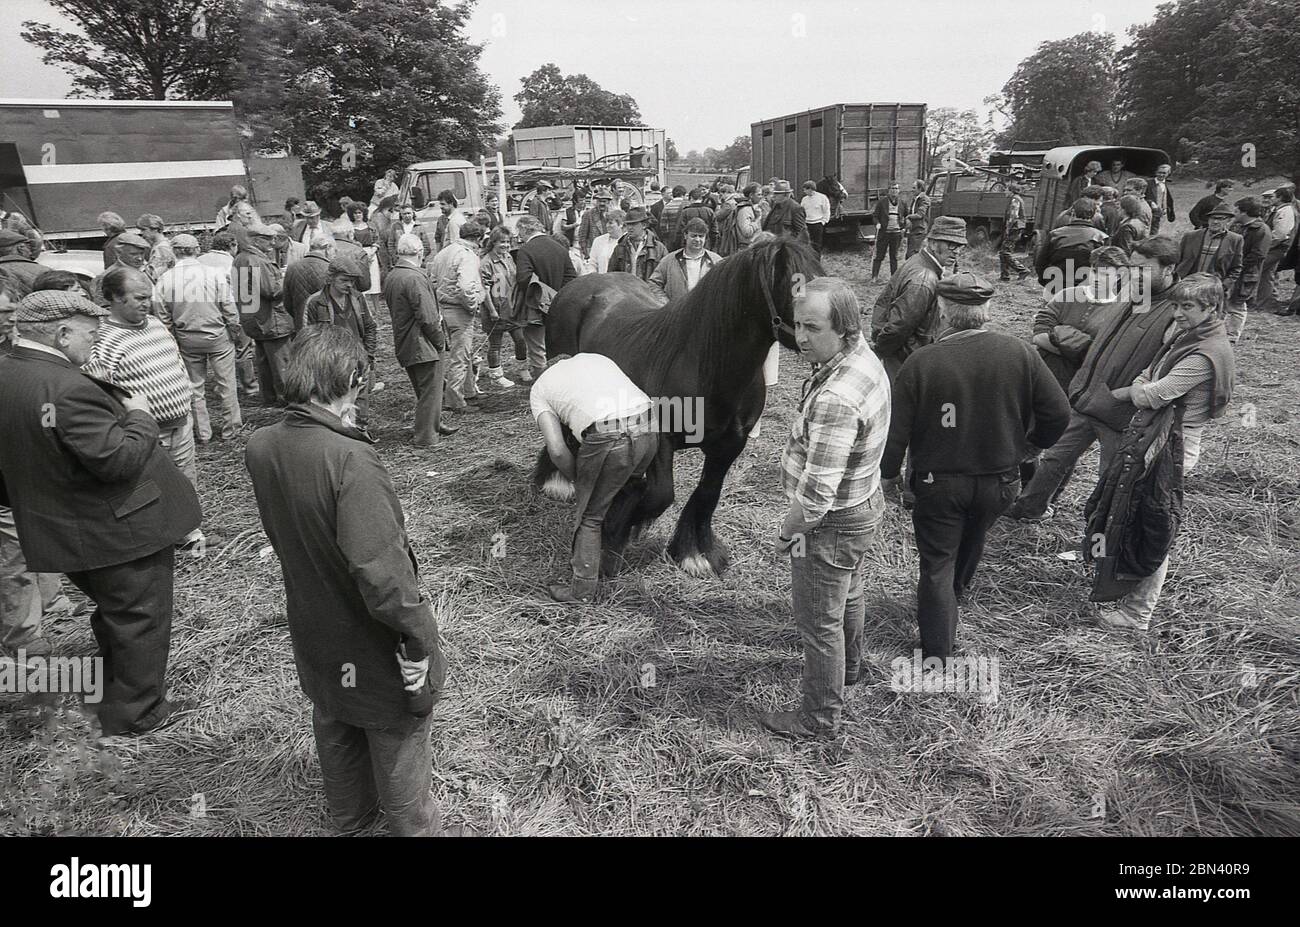 1987, en el exterior de la feria de caballos Gypsy o Travellers, los visitantes se reúnen para ver a un arriero remontando un caballo, Inglaterra, Reino Unido. Foto de stock